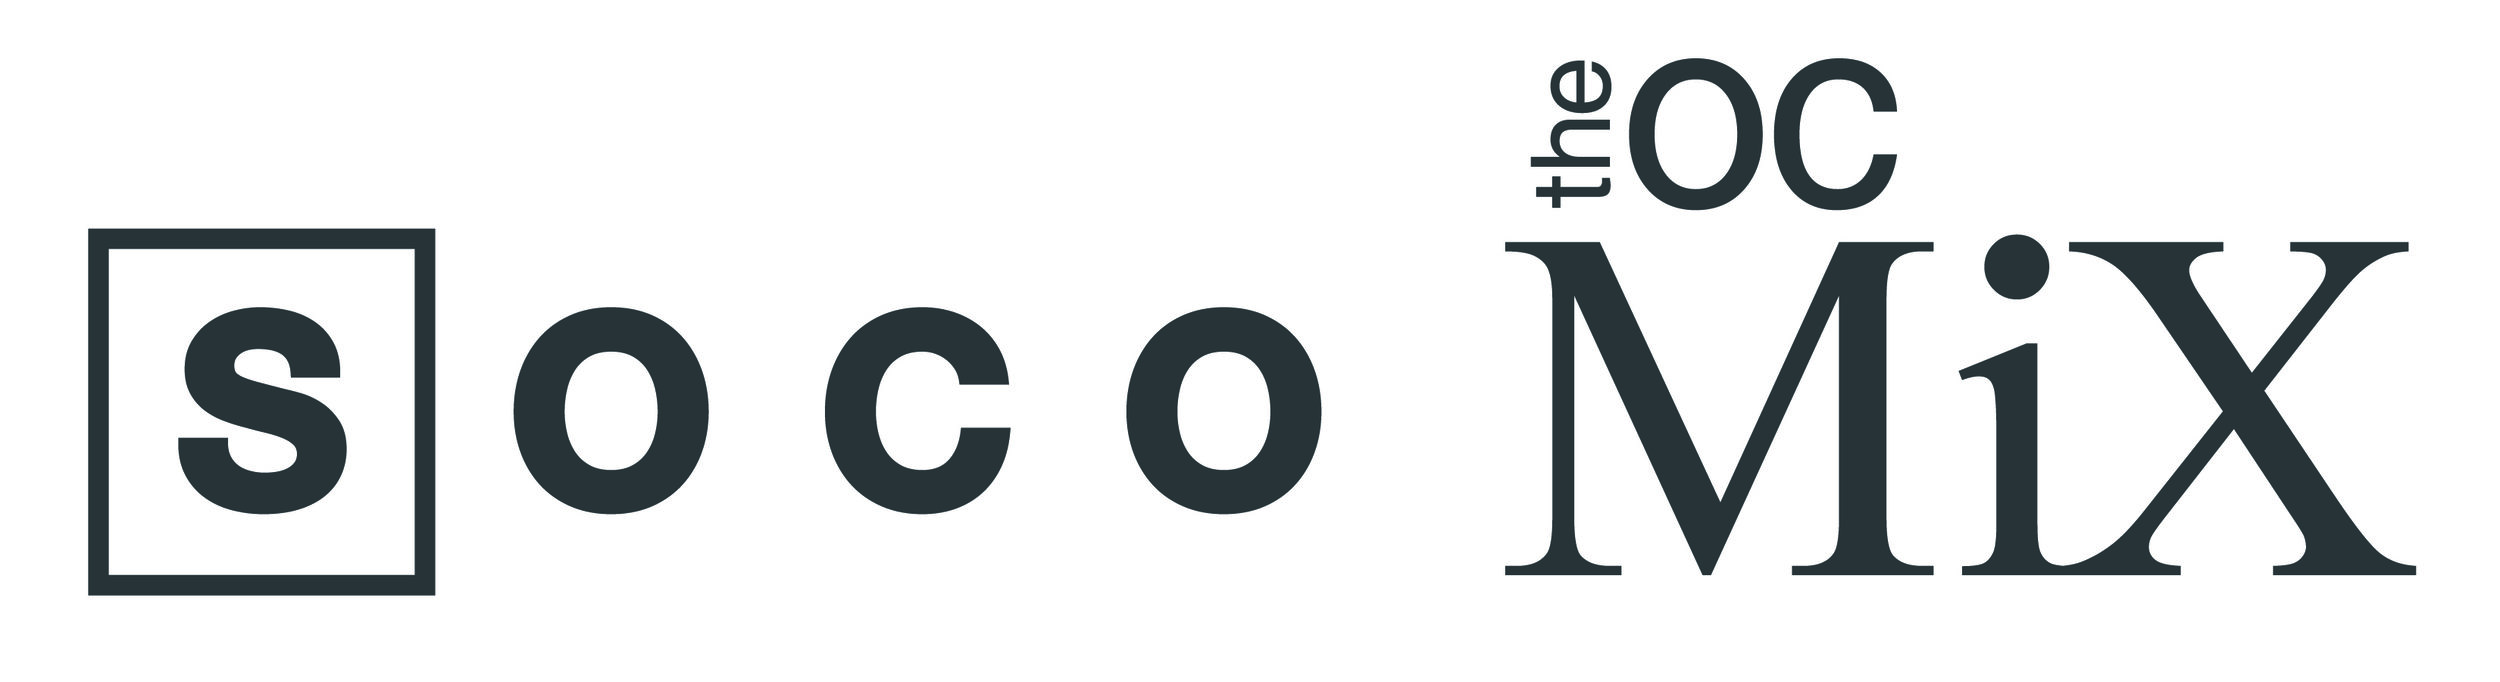 SOCOMix-Logo-CMYK.jpg